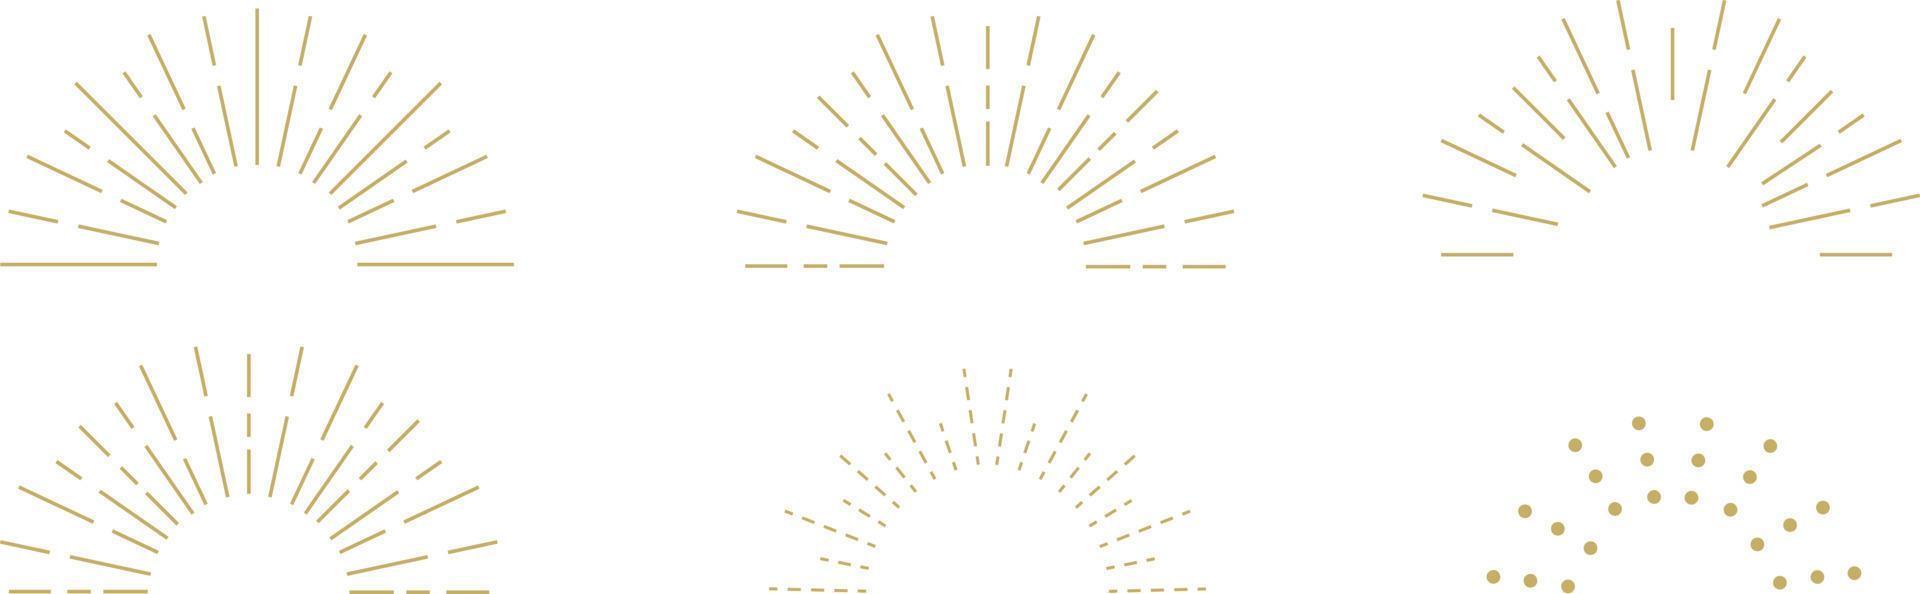 colección vintage de rayos de sol. estallido de rayos de sol. fuegos artificiales. logotipo o elemento de diseño de letras. rayos de sol radiales. ilustración vectorial vector